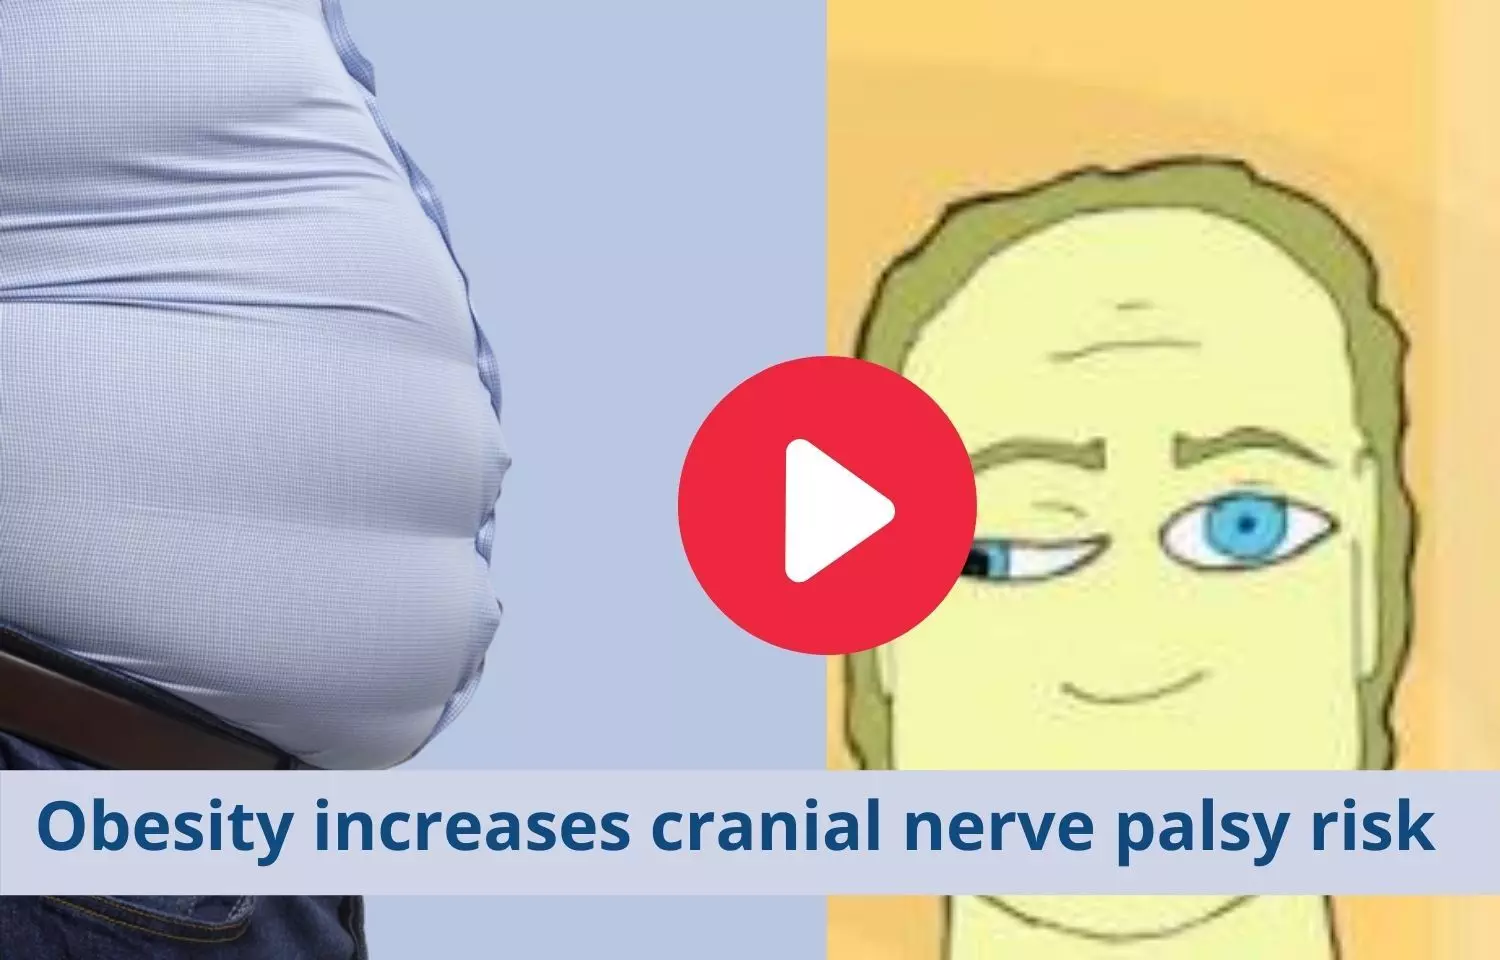 Cranial nerve palsy risk tied to obesity